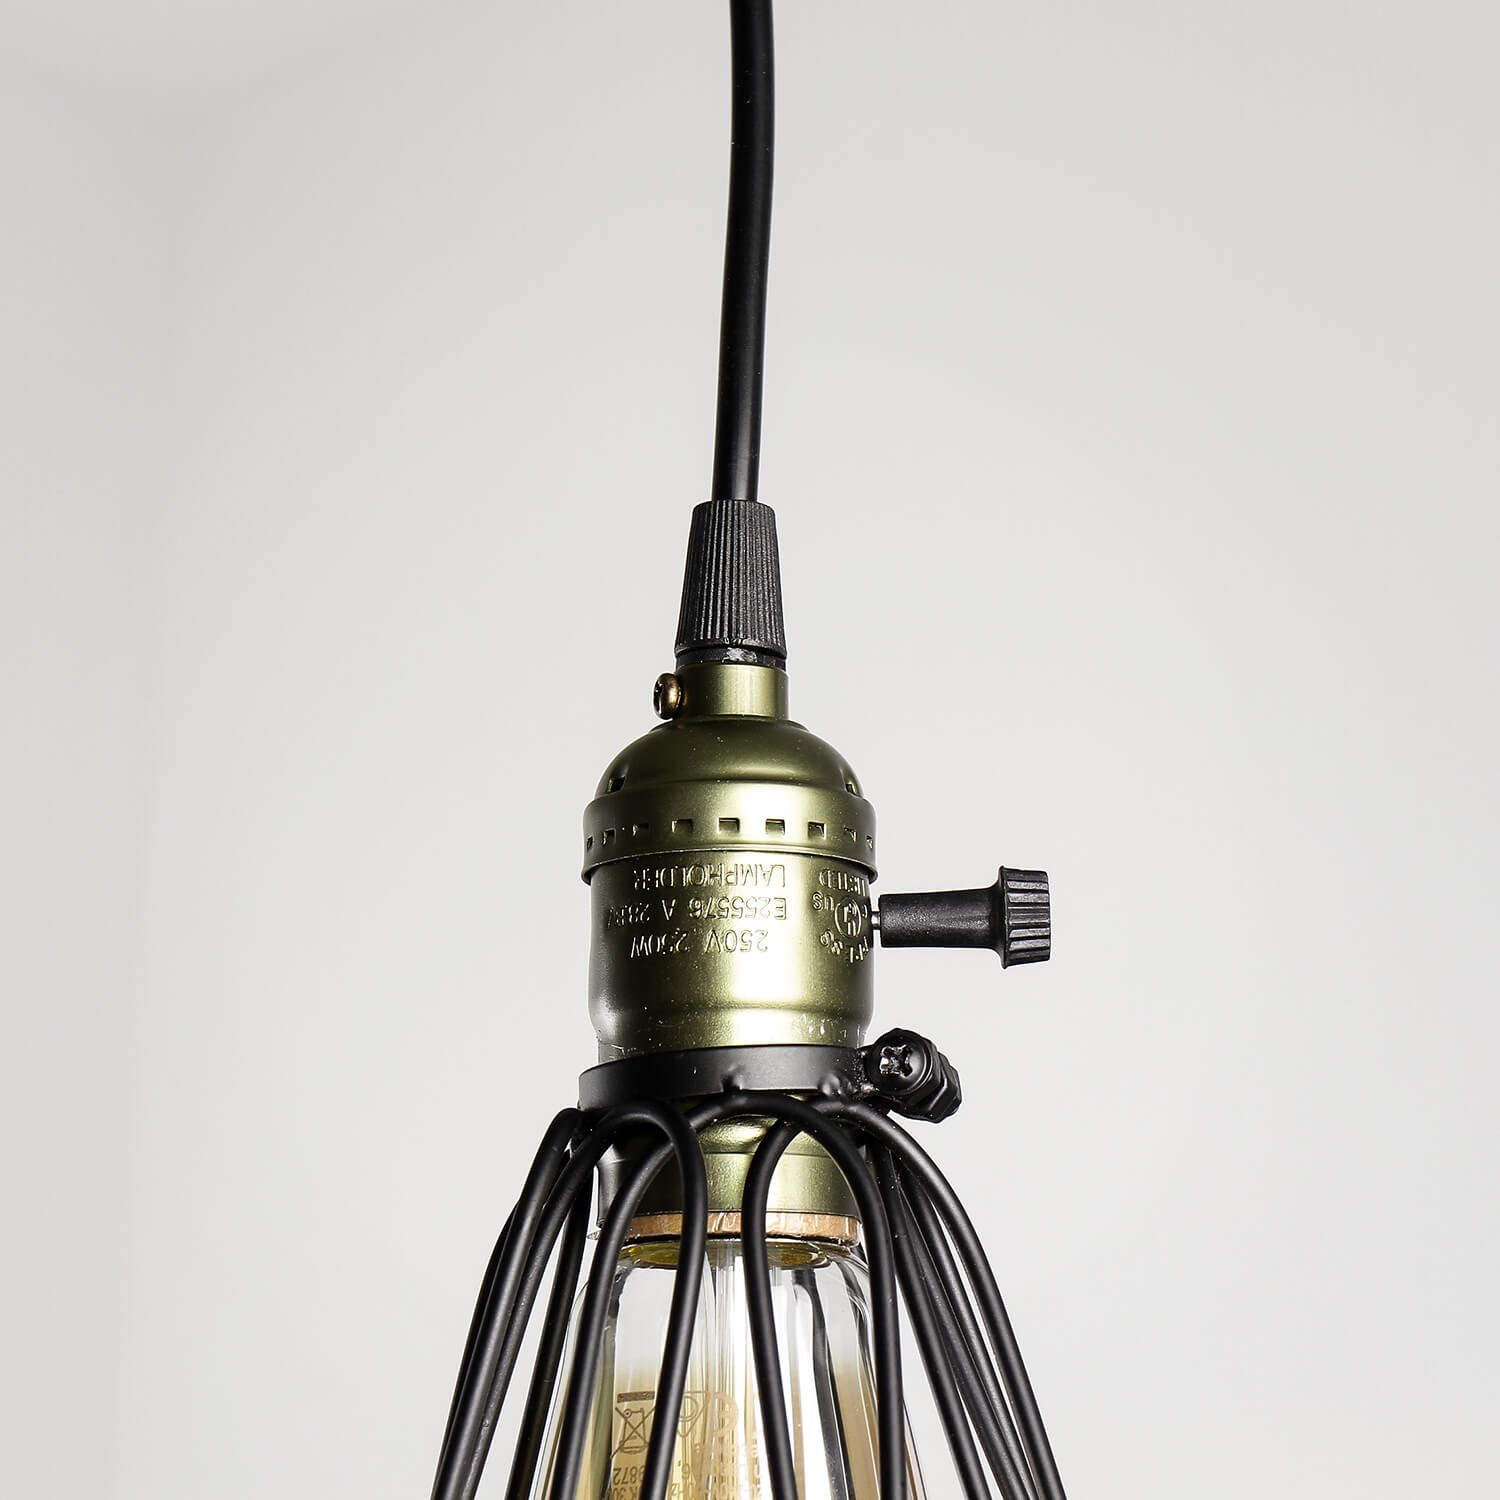 Vintage Pendelleuchte Industrial Hängelampe Licht-Erlebnisse ohne Design CARLTON, Küche Esstisch Metall Leuchtmittel,